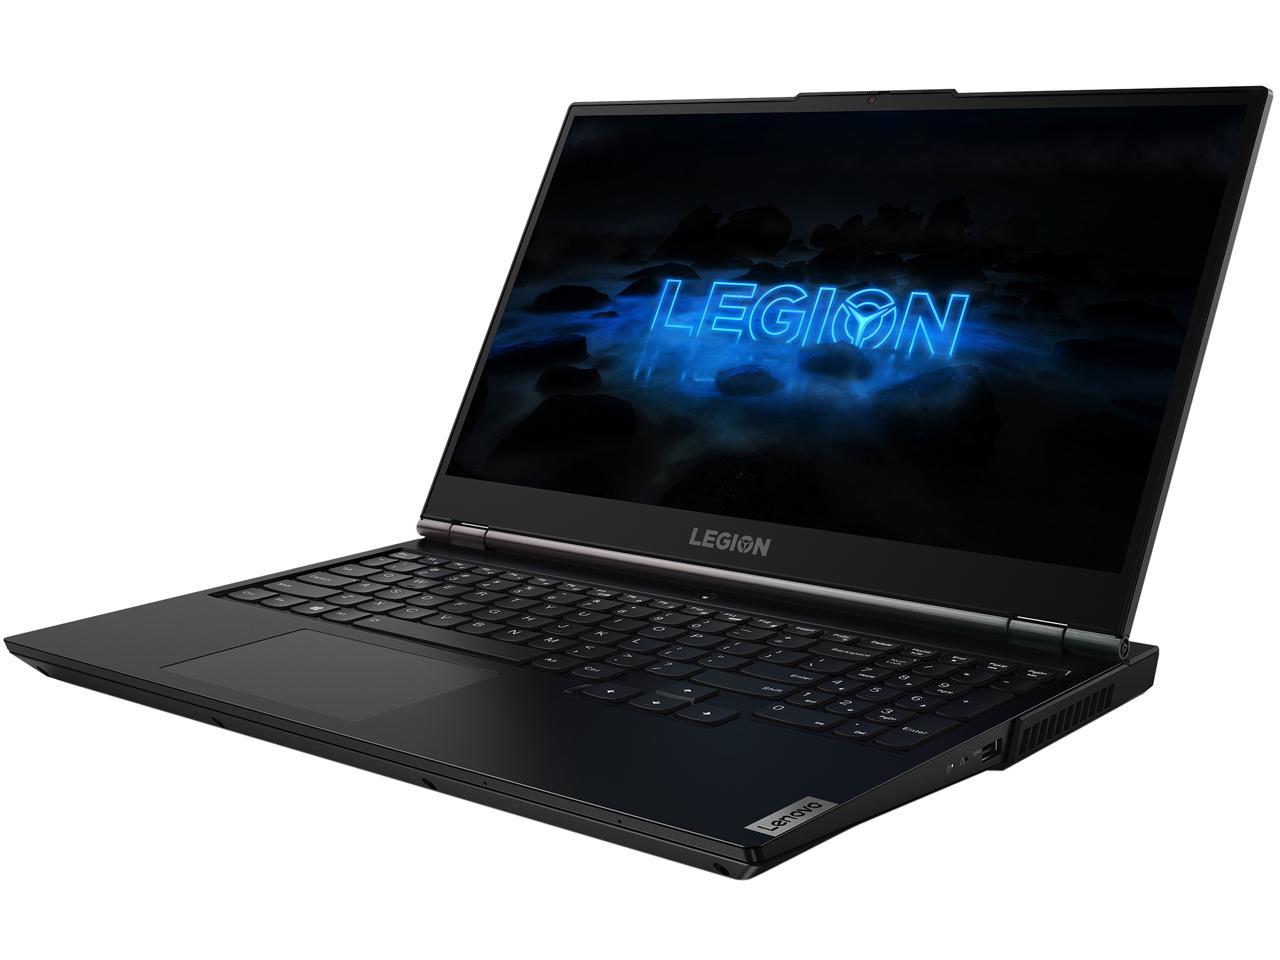 Lenovo Legion 5 - 15.6" - Intel Core i7-10750H - GeForce GTX 1650 - 8 GB DDR4 - 256 GB SSD - Windows 10 Home - Gaming Laptop (82AU0013US)